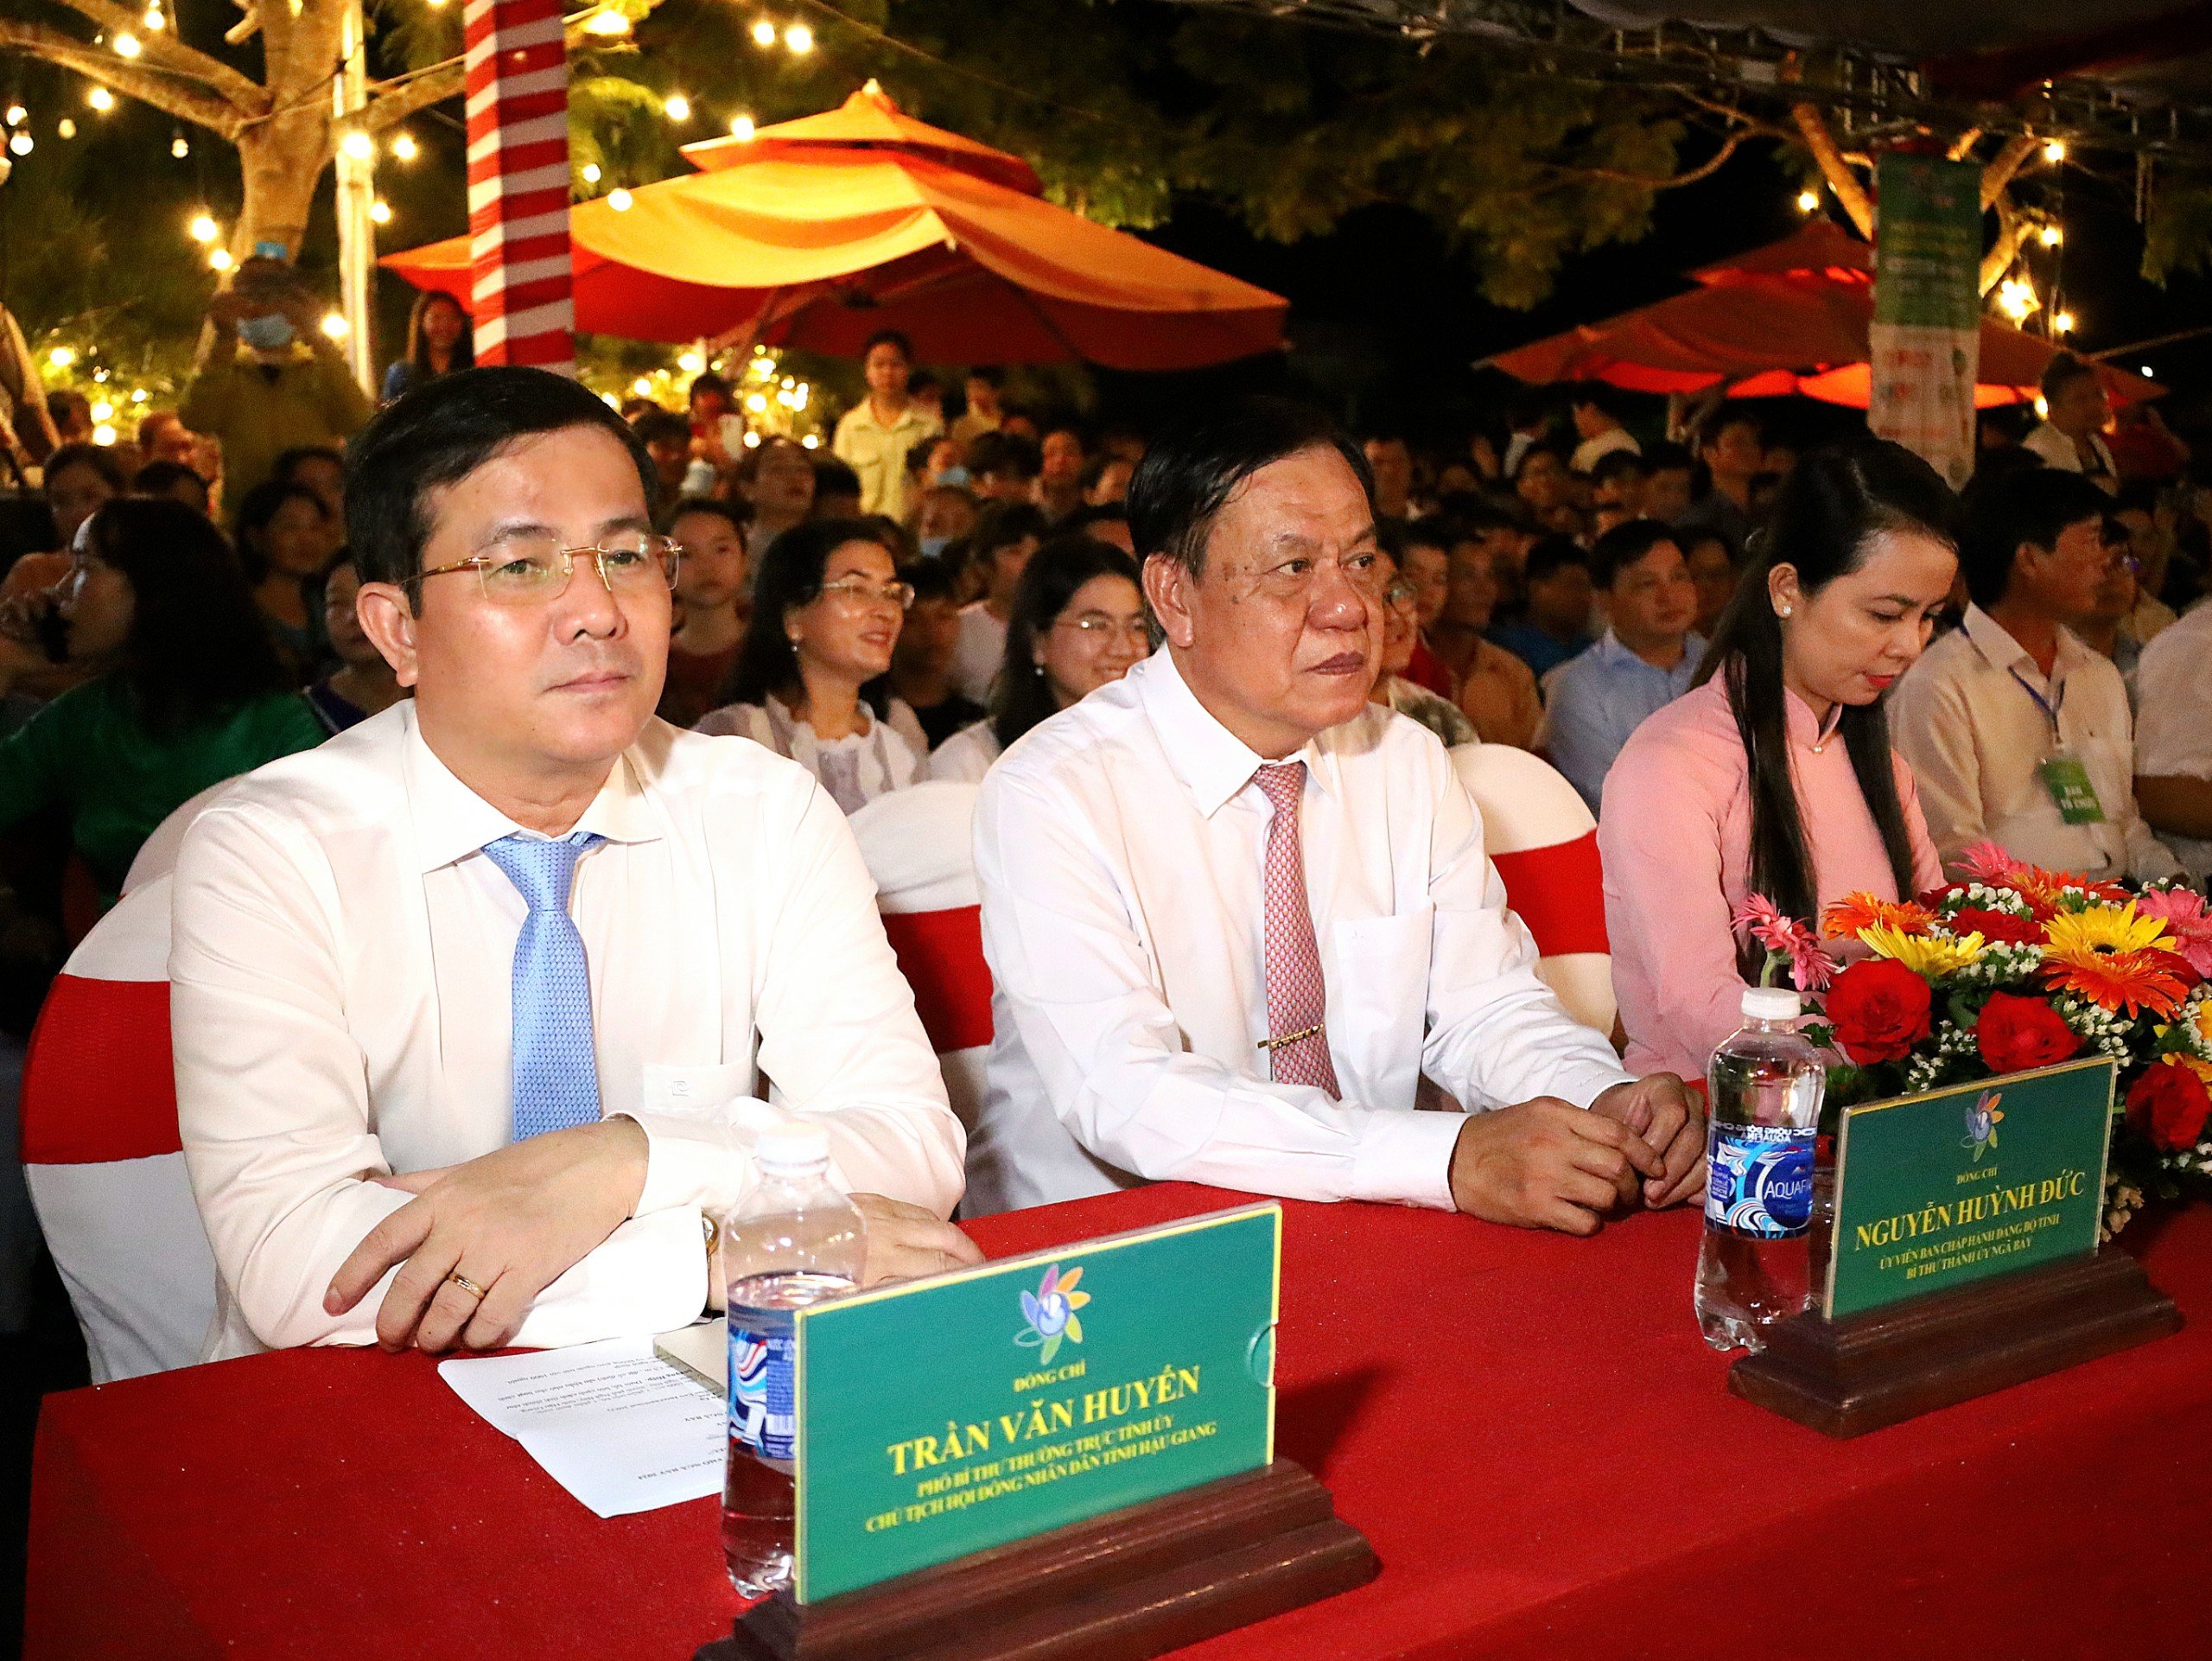 Ông Trần Văn Huyến (bìa trái) - Phó Bí thư Thường trực Tỉnh ủy, Chủ tịch HĐND tỉnh Hậu Giang tham dự chương trình.